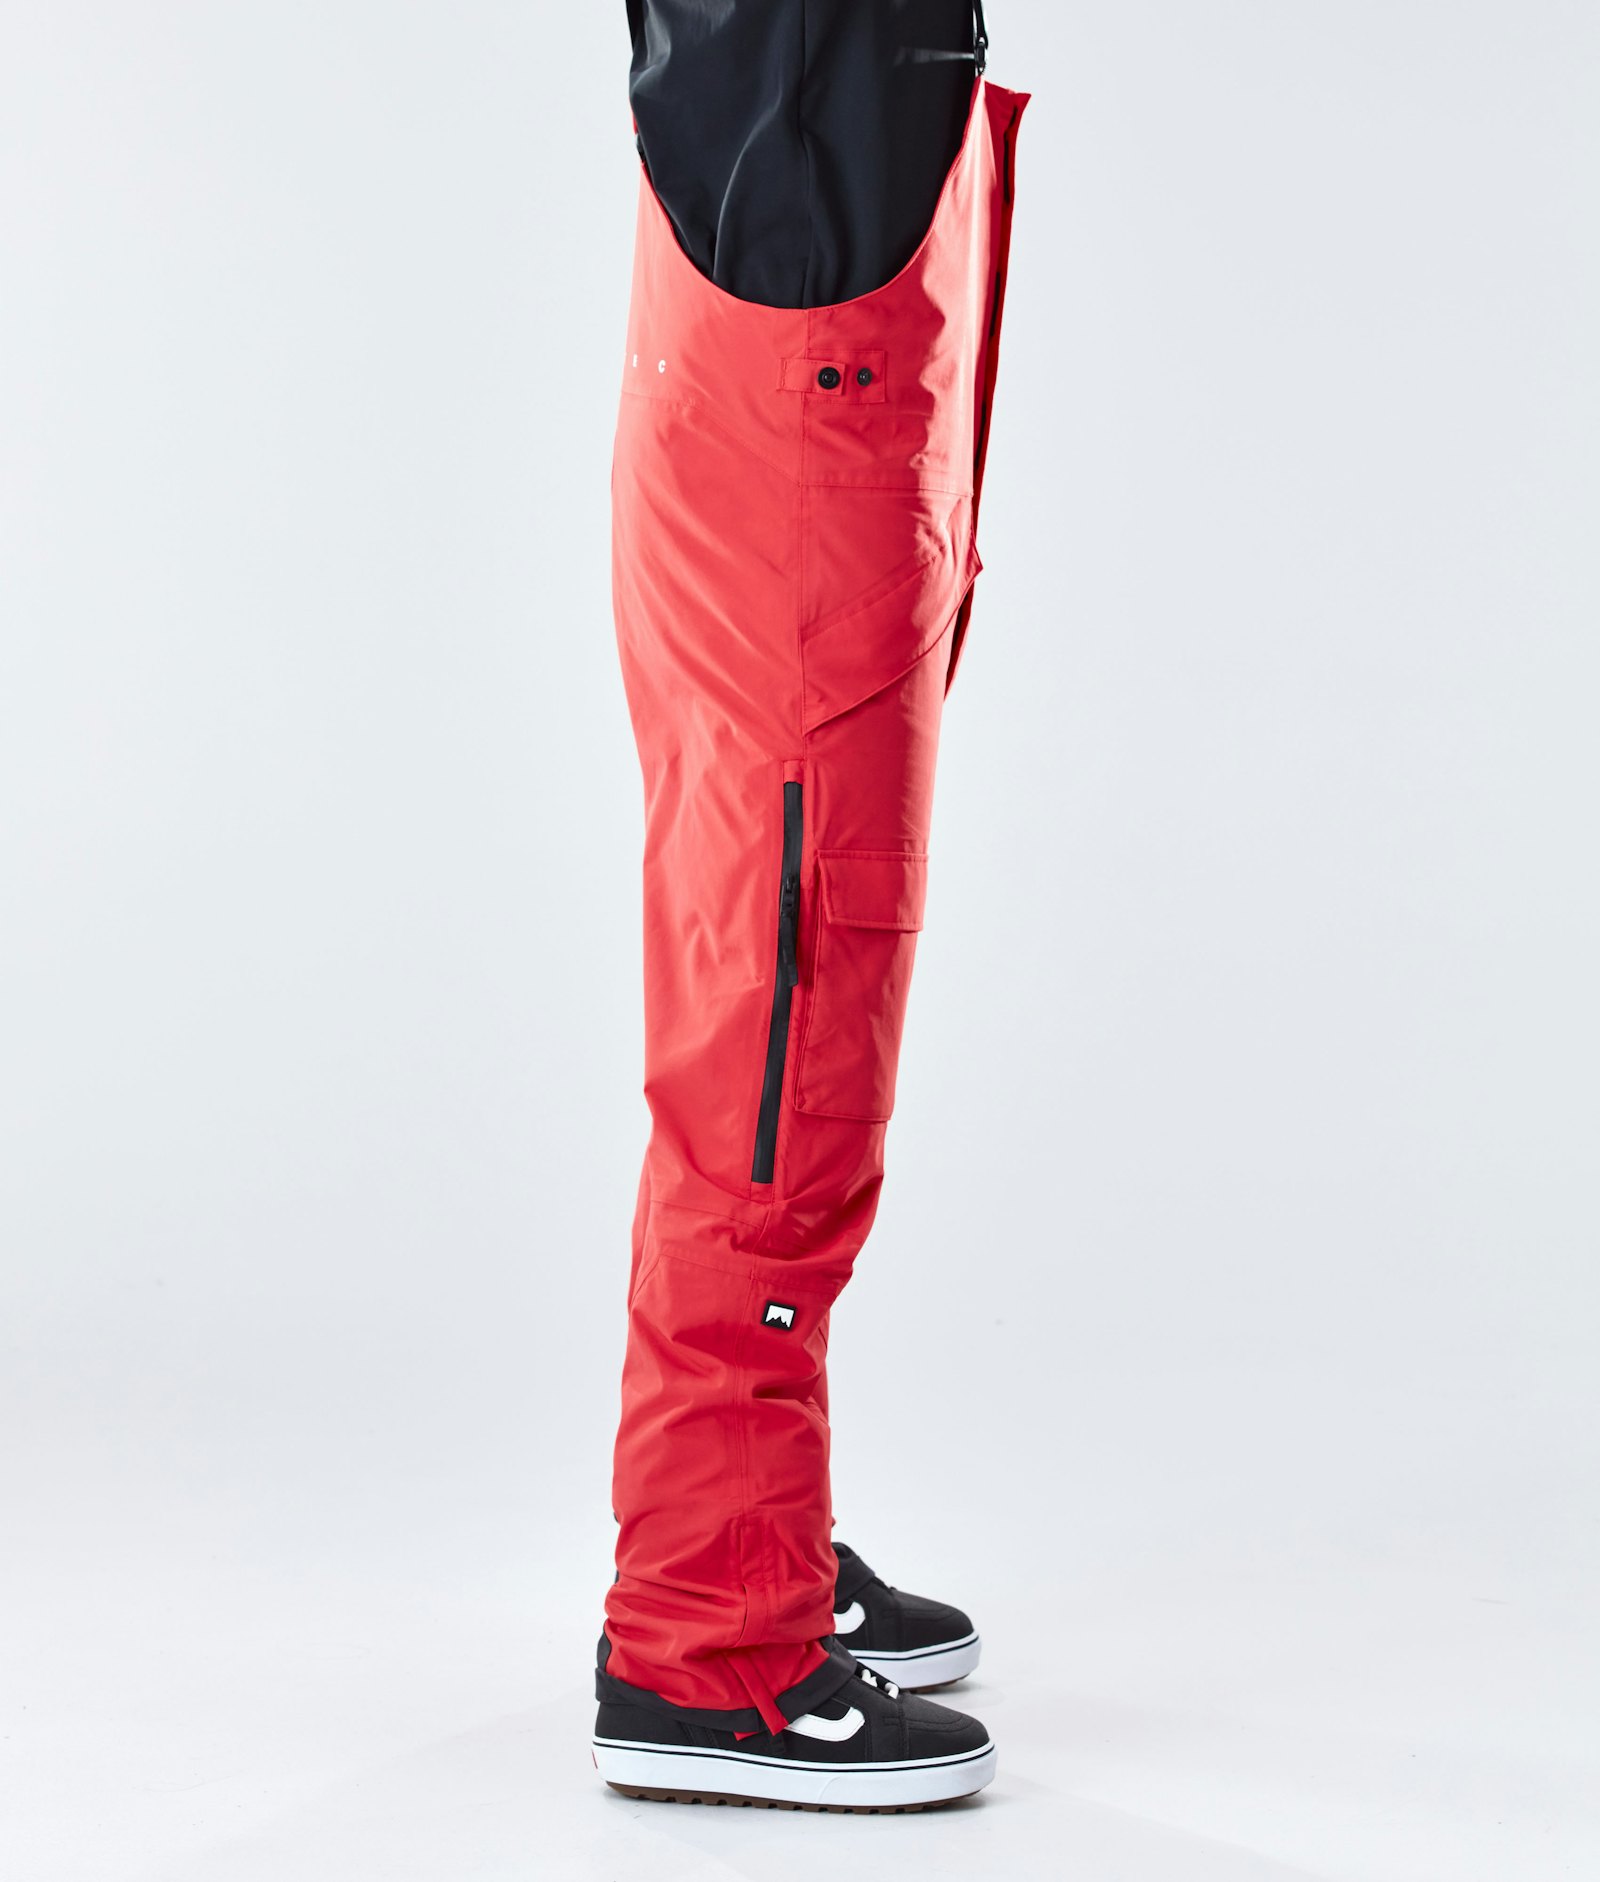 Fawk 2020 Spodnie Snowboardowe Mężczyźni Red